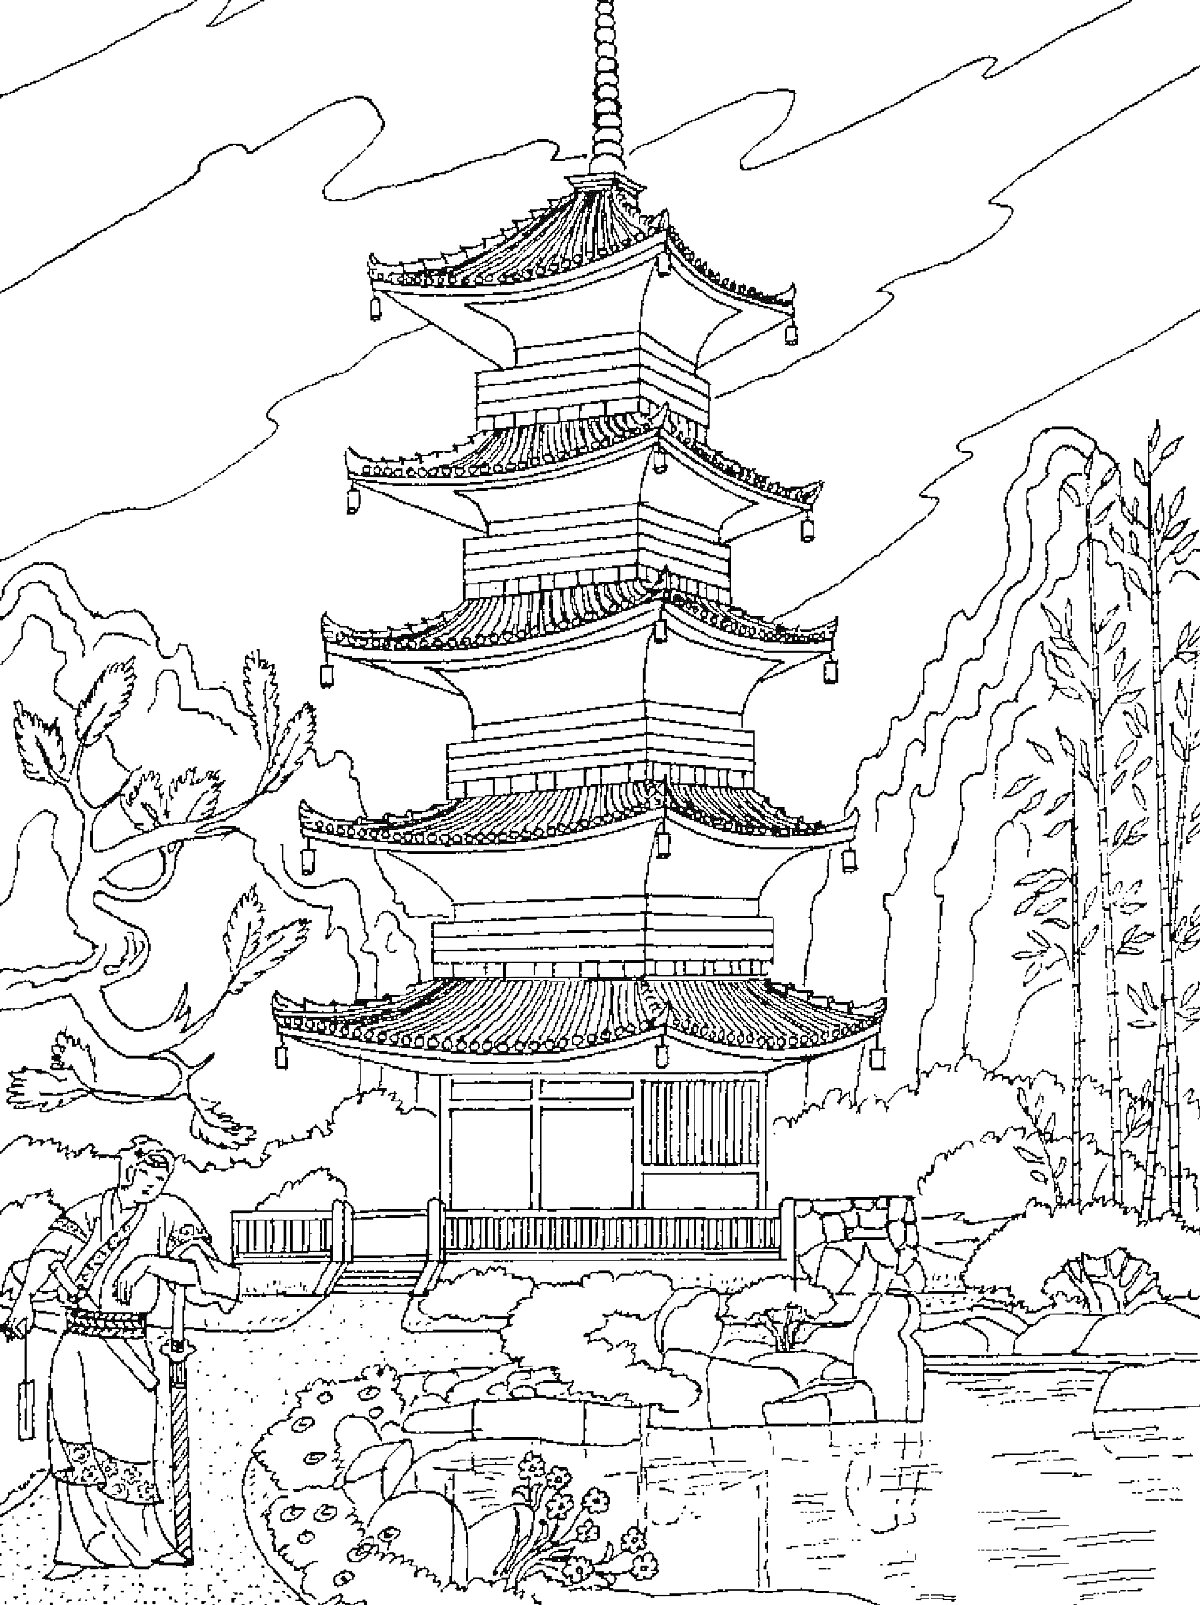 Пагода в китайском саду со статуей дракона и деревьями на фоне